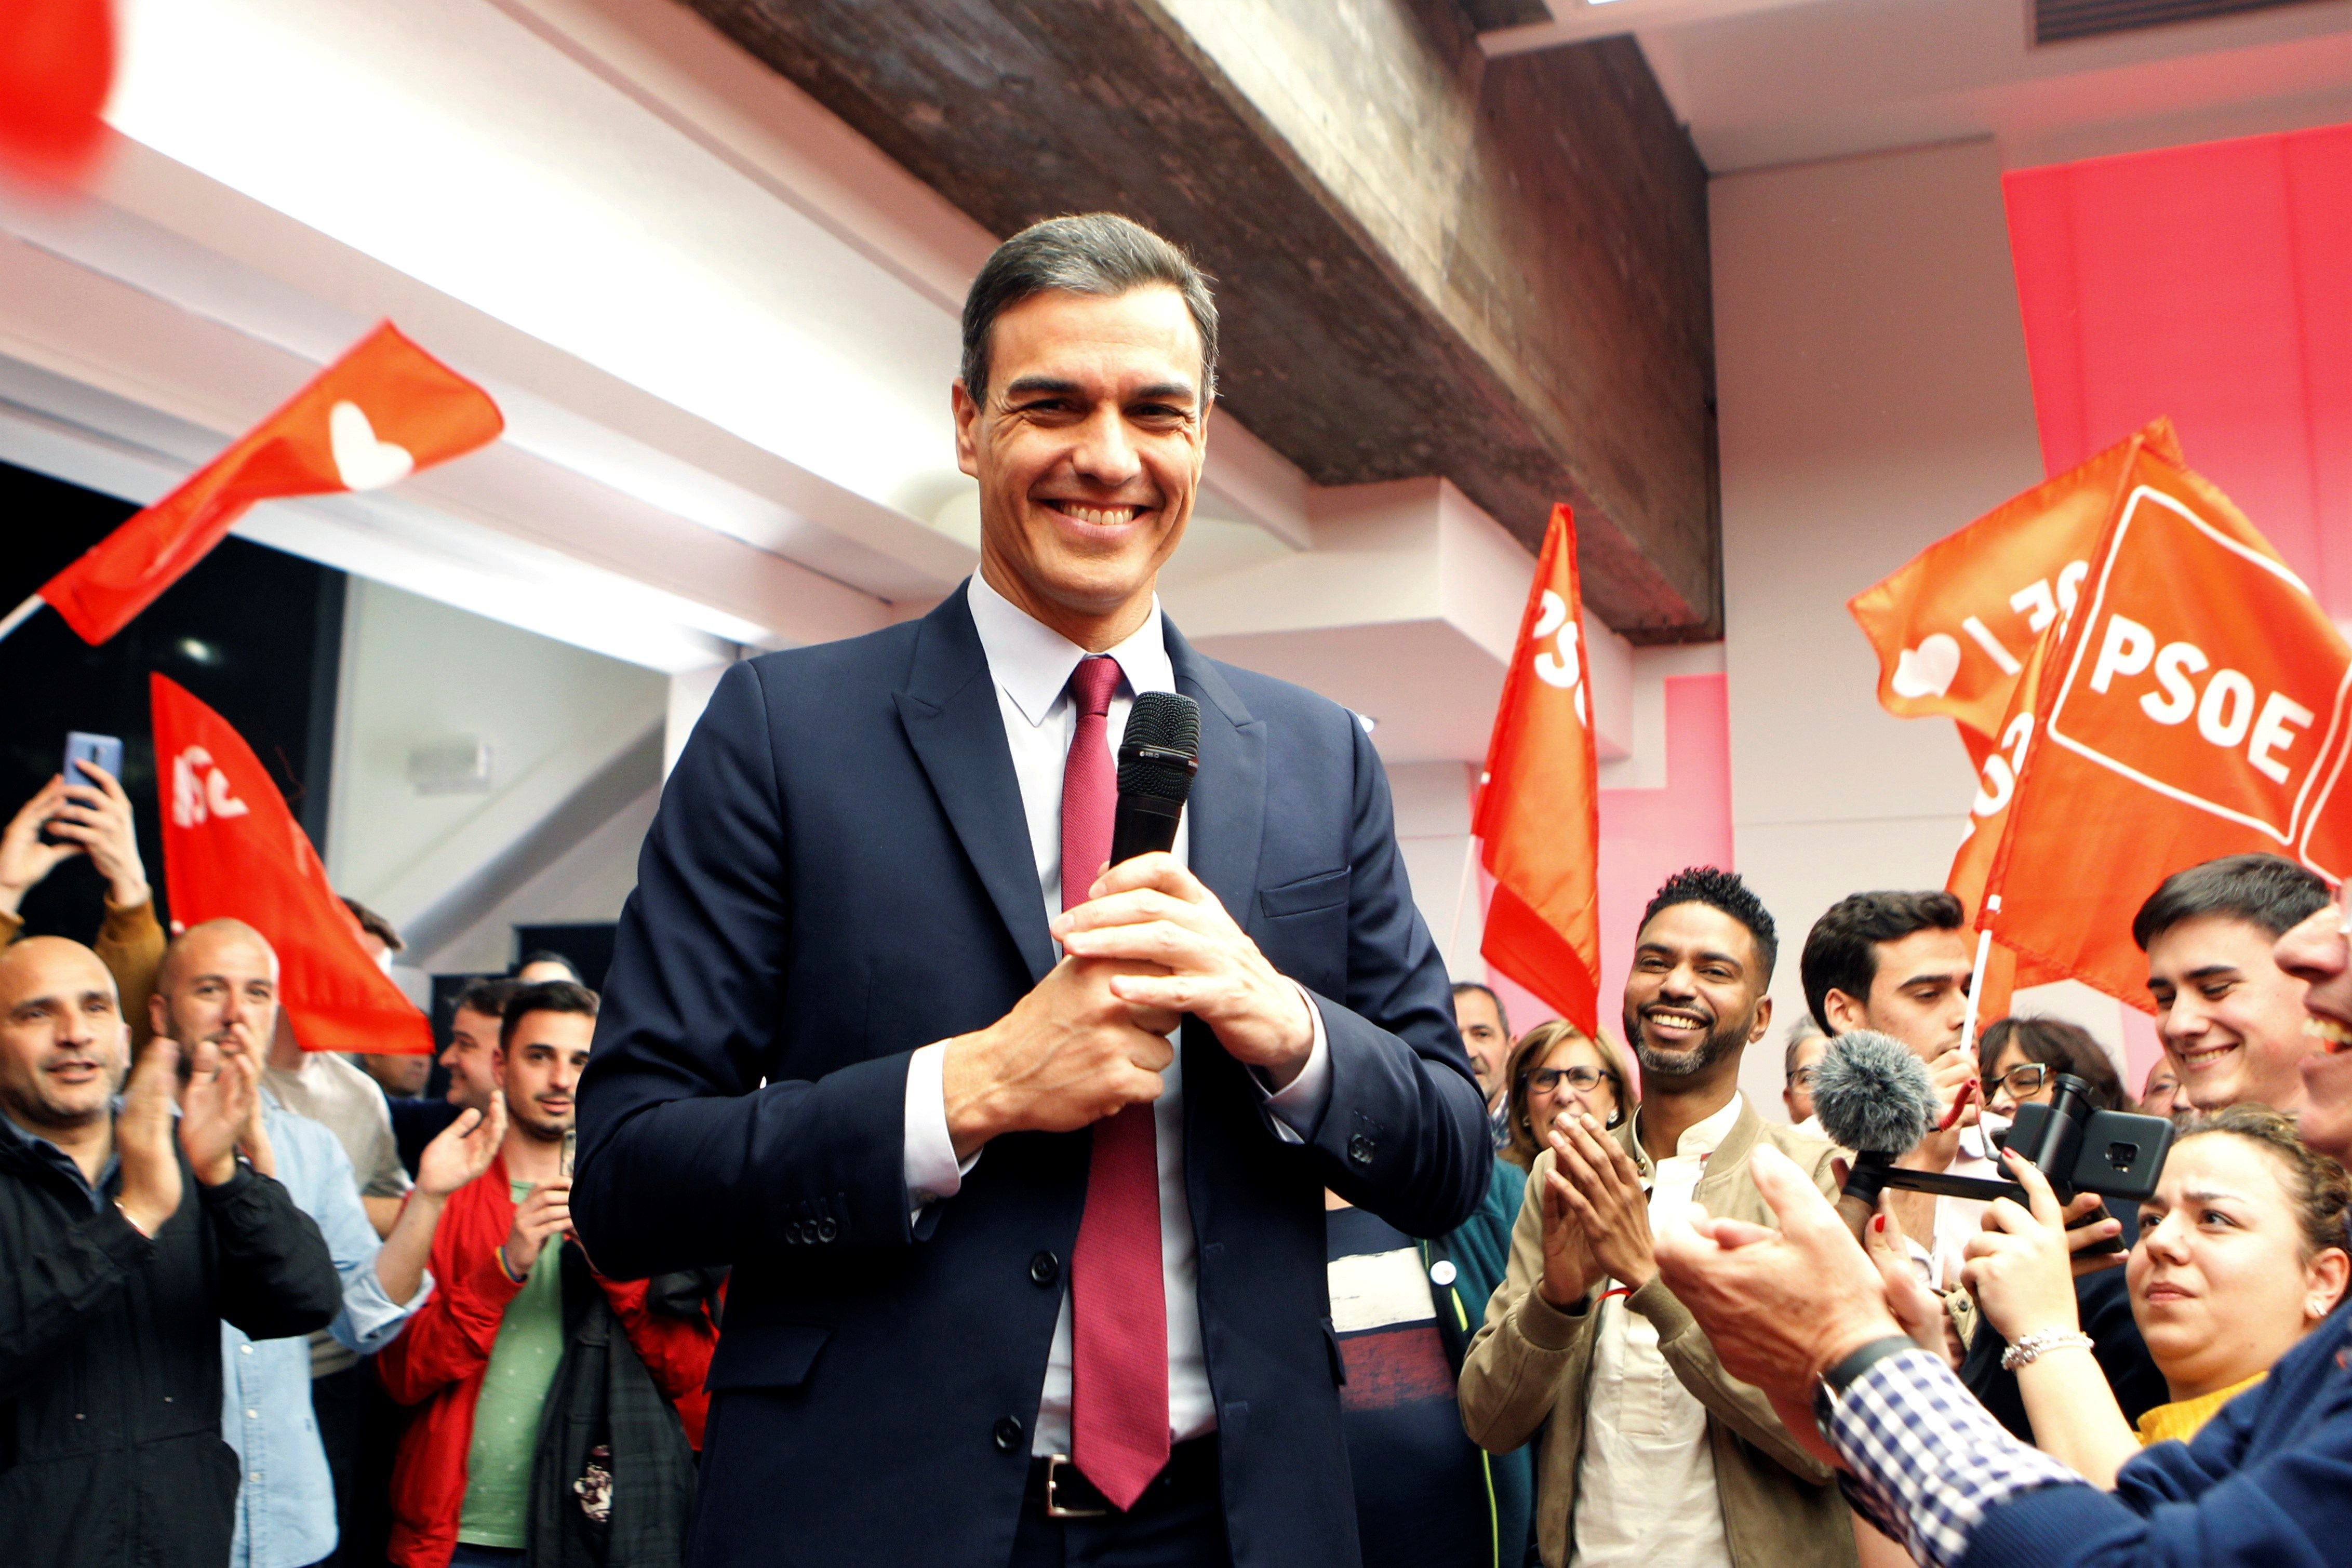 CIS | El PSOE se consolida, Vox frena el ascenso y Cs sigue en el pozo